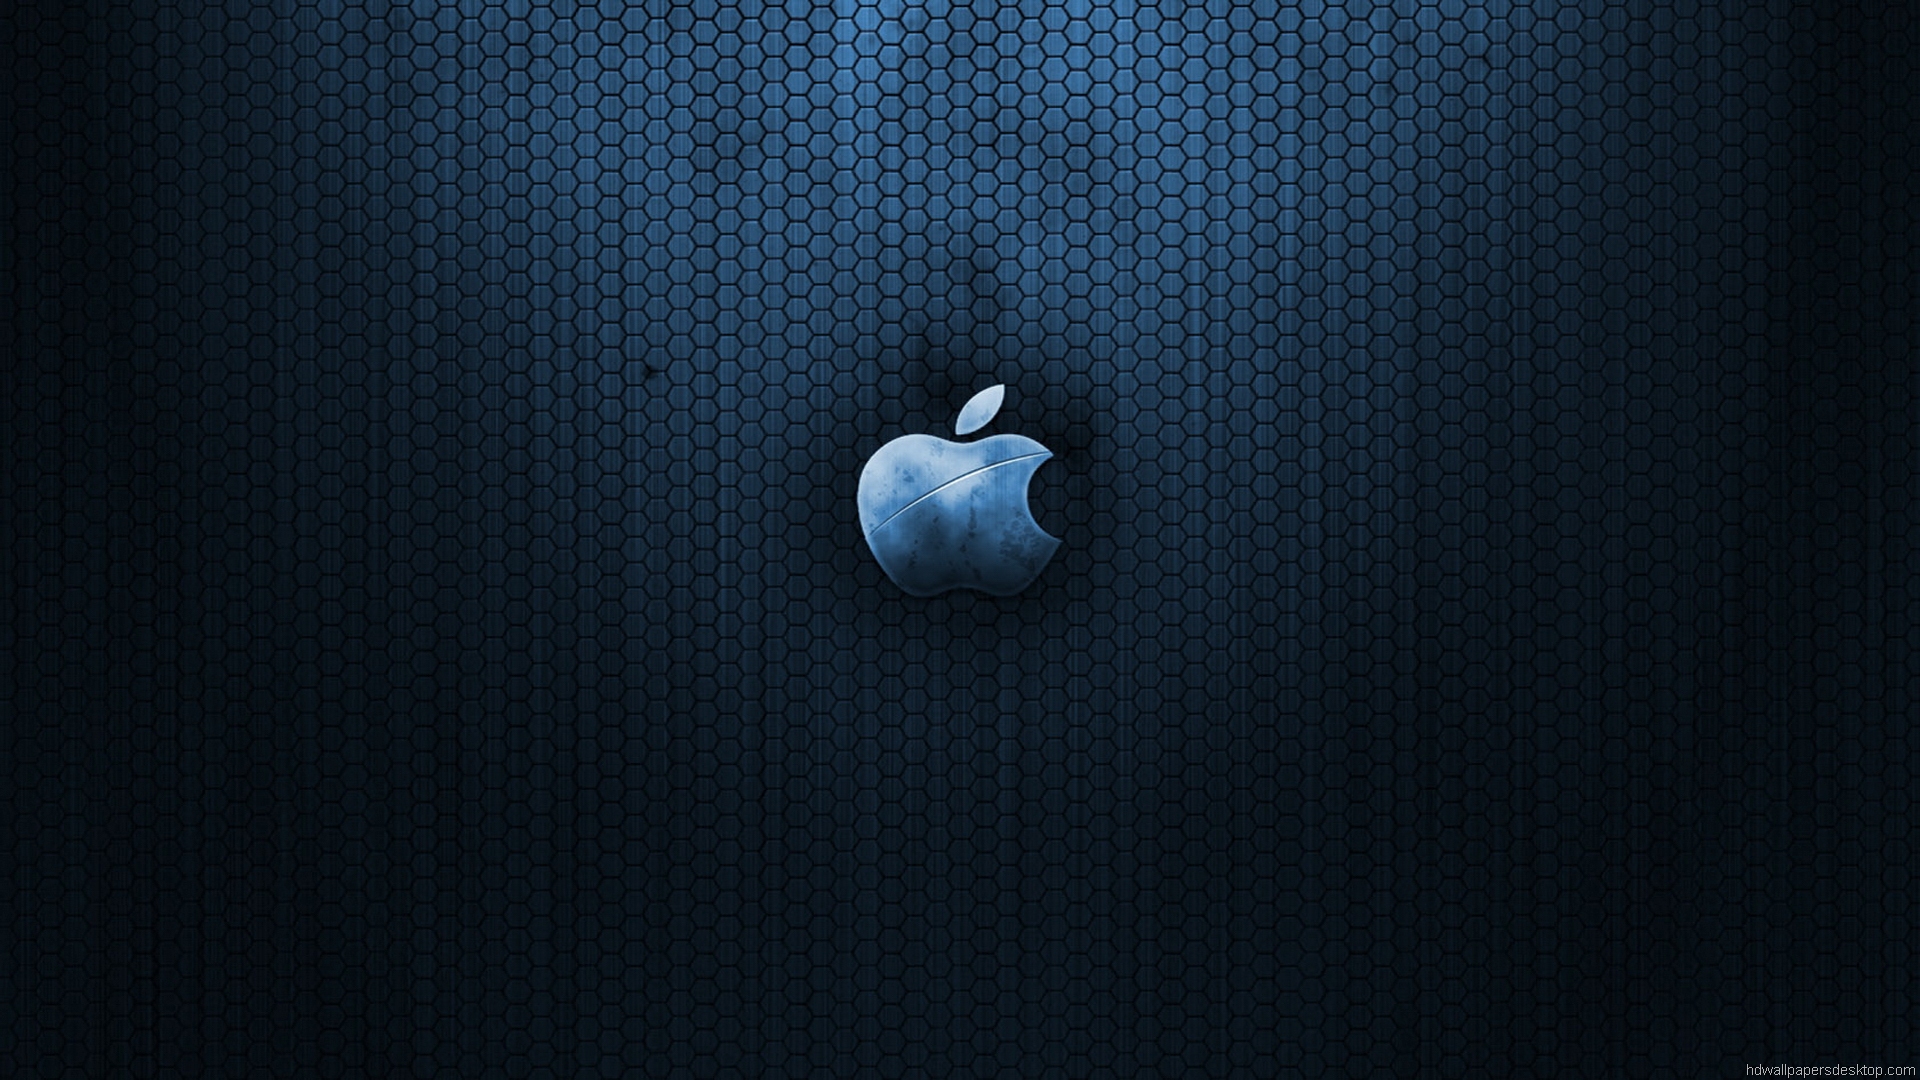 [48+] Apple Hd Wallpapers 1080p | WallpaperSafari